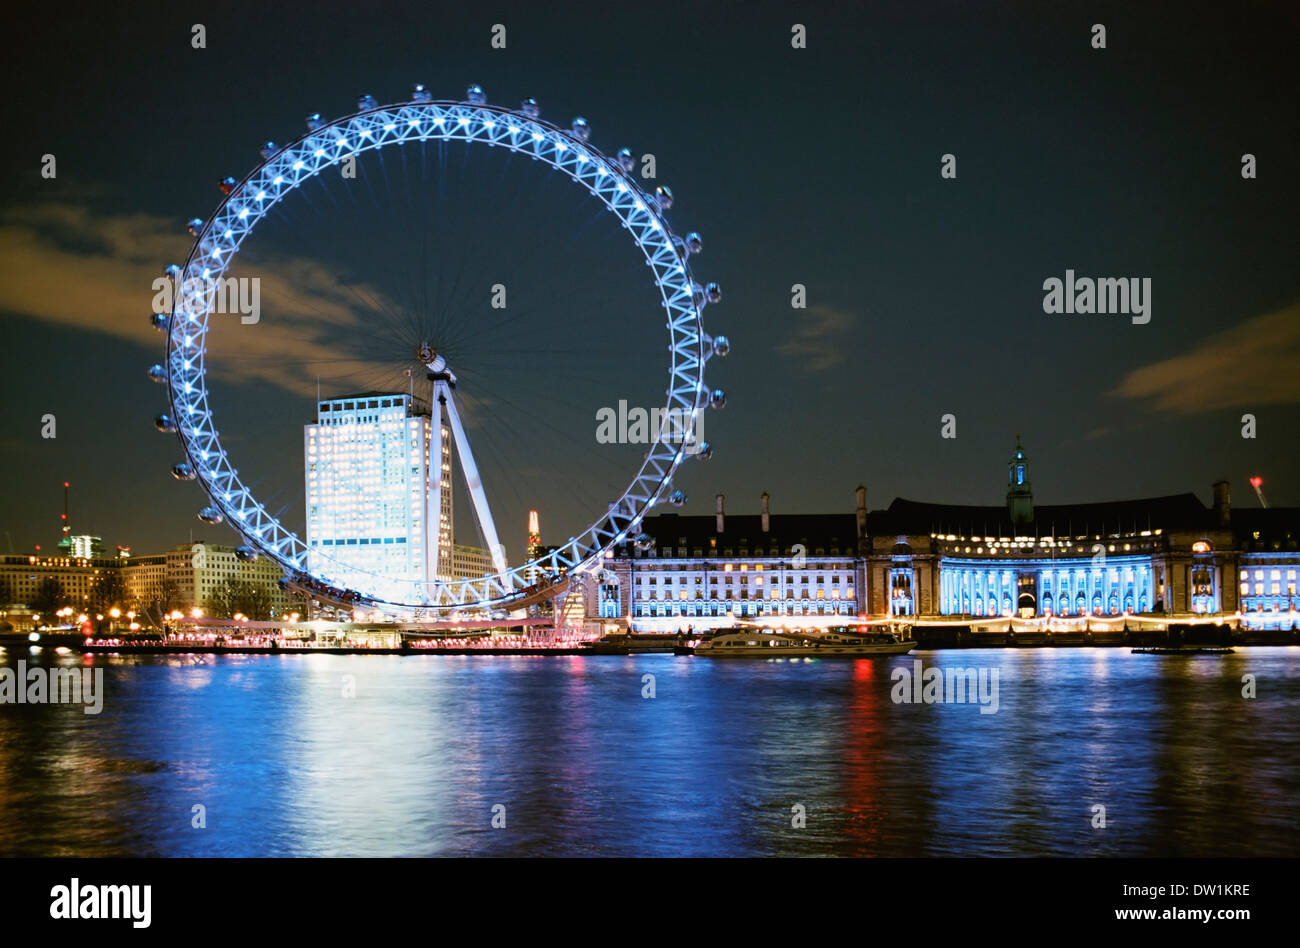 The Millennium Wheel, London, UK, illuminated at night Stock Photo